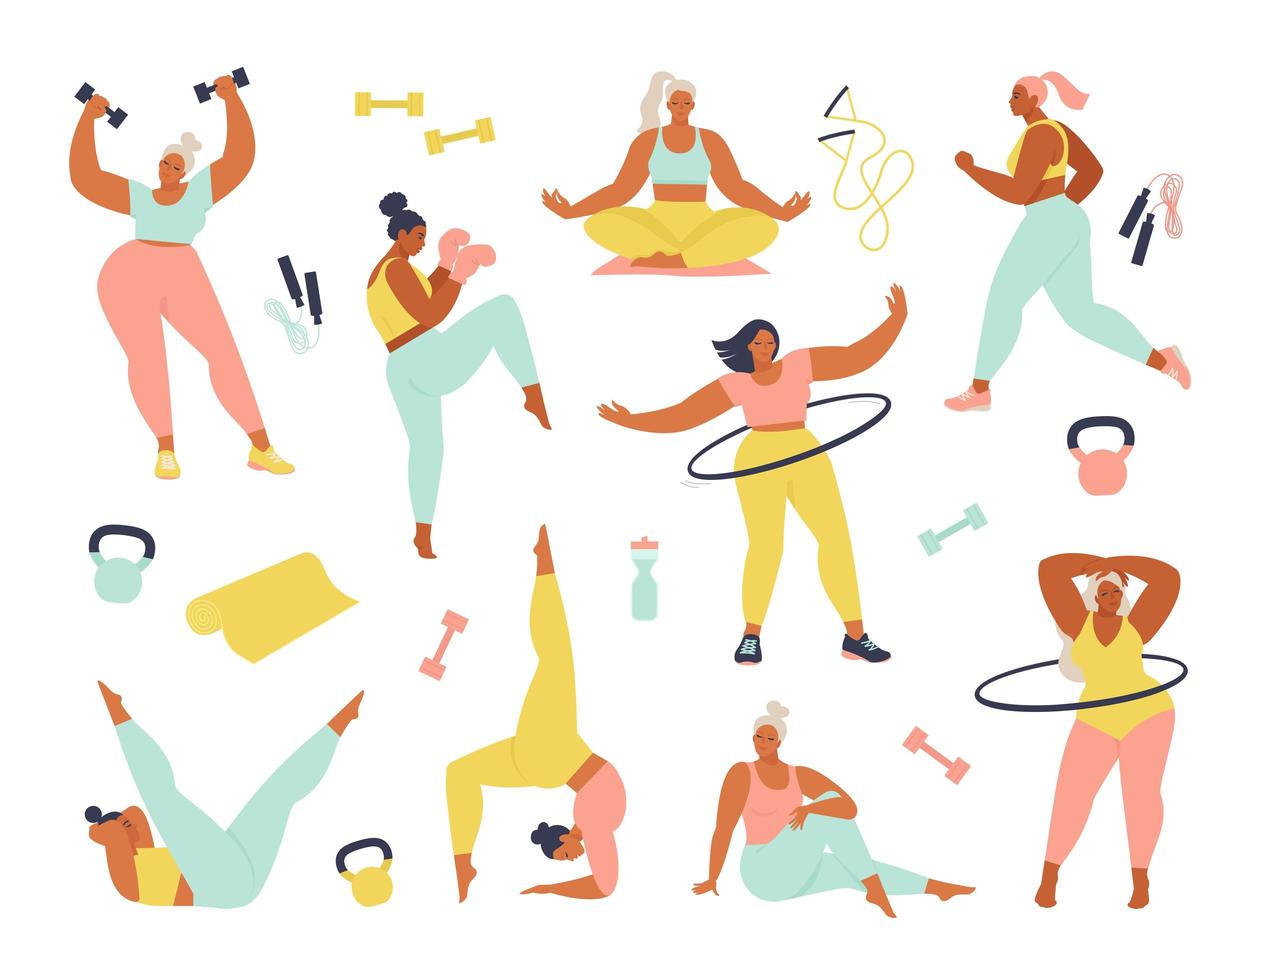 mulheres diferentes tamanhos, idades e atividades corridas. conjunto de mulheres fazendo esportes, ioga, corrida, salto, alongamento, fitness. mulheres do esporte vector a ilustração plana isolada no fundo branco.